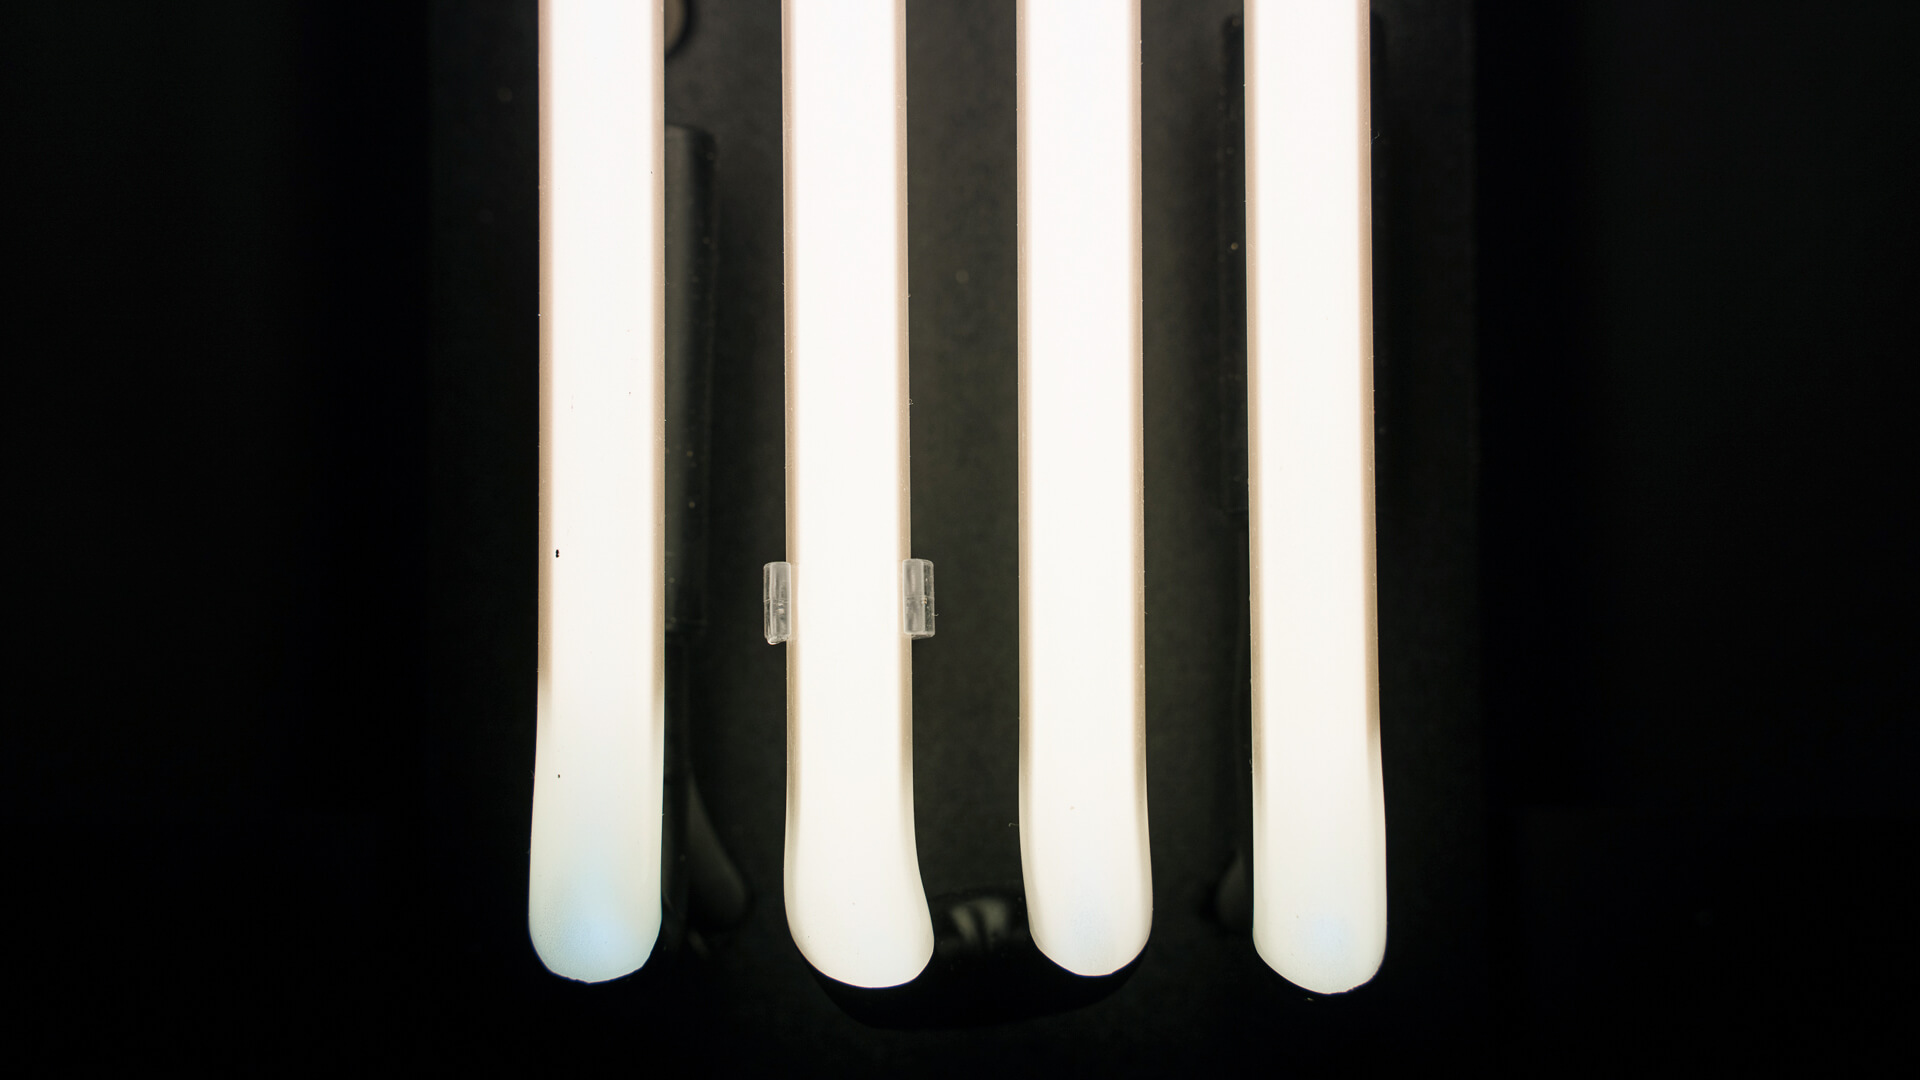 Neon Tamara Lempicka - Wit neutraal neon